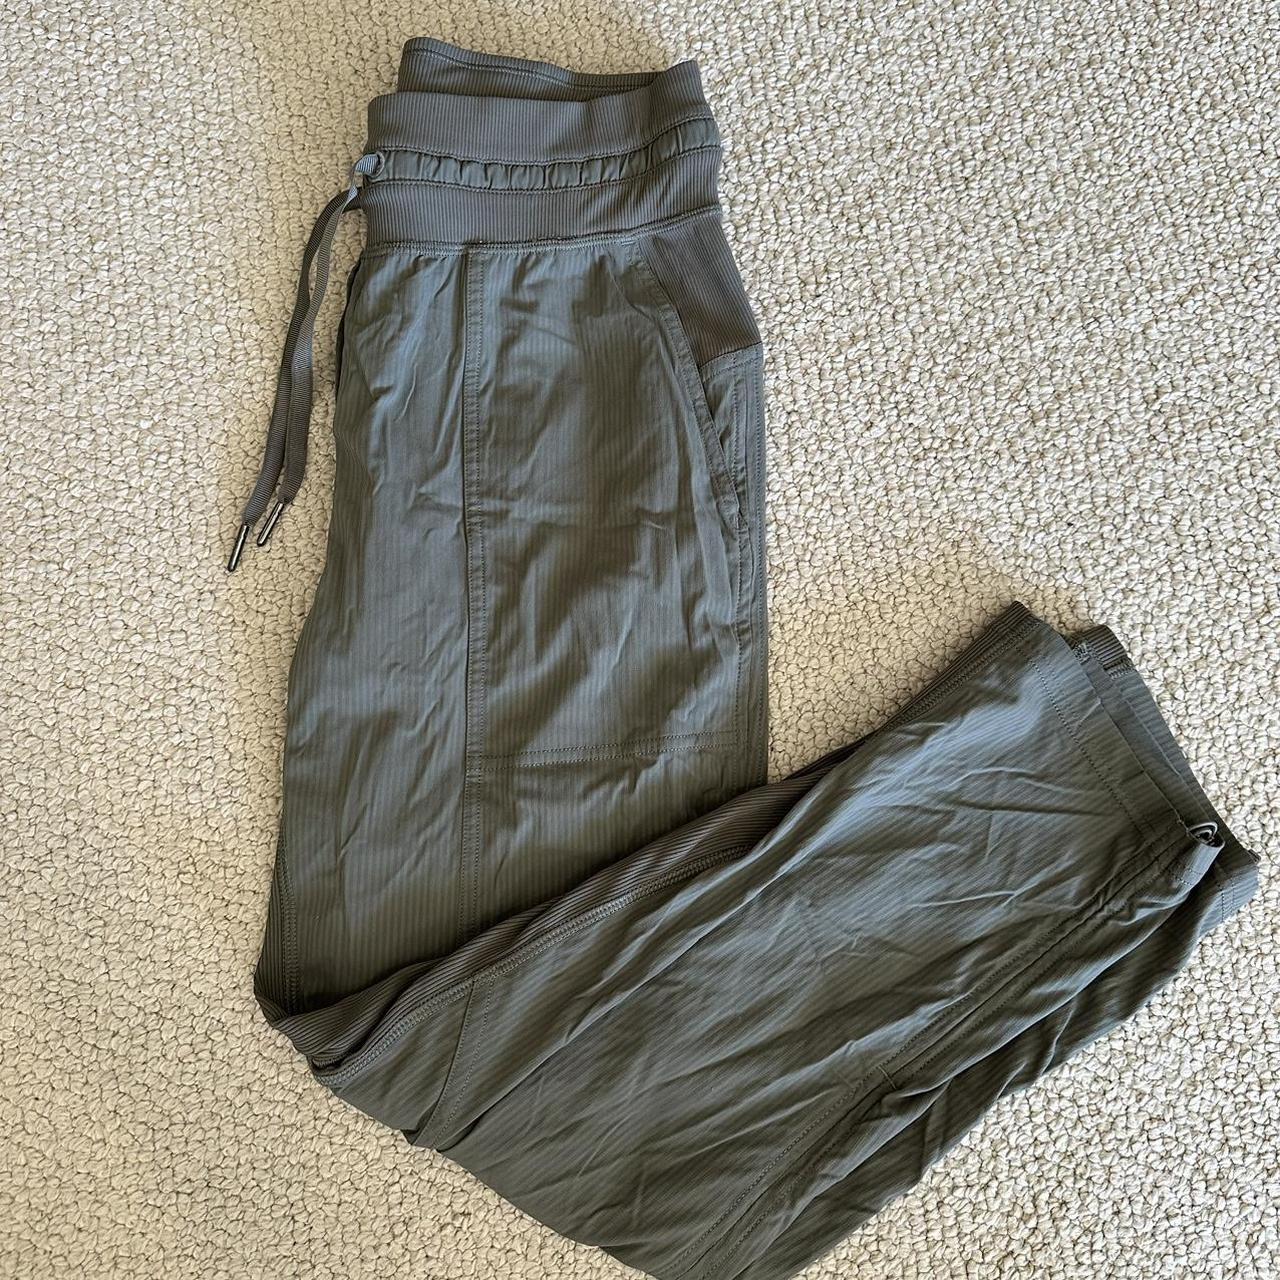 Size 16 Sonoma Capri Pants. Worn a few times but - Depop